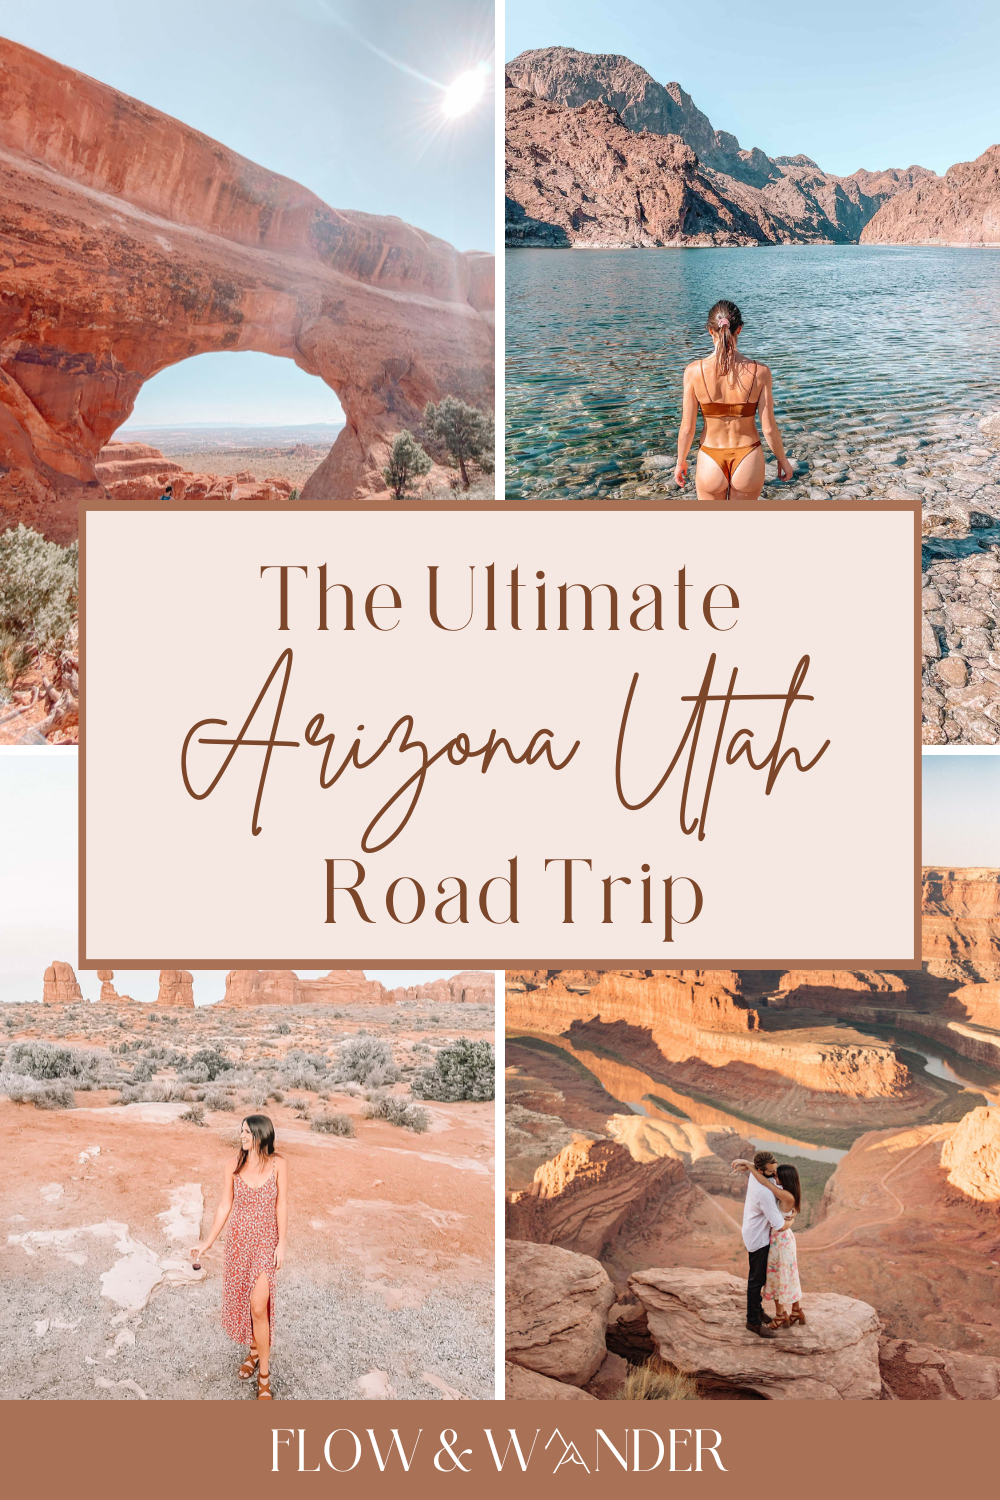 arizona-utah-road-trip-graphic00001.png